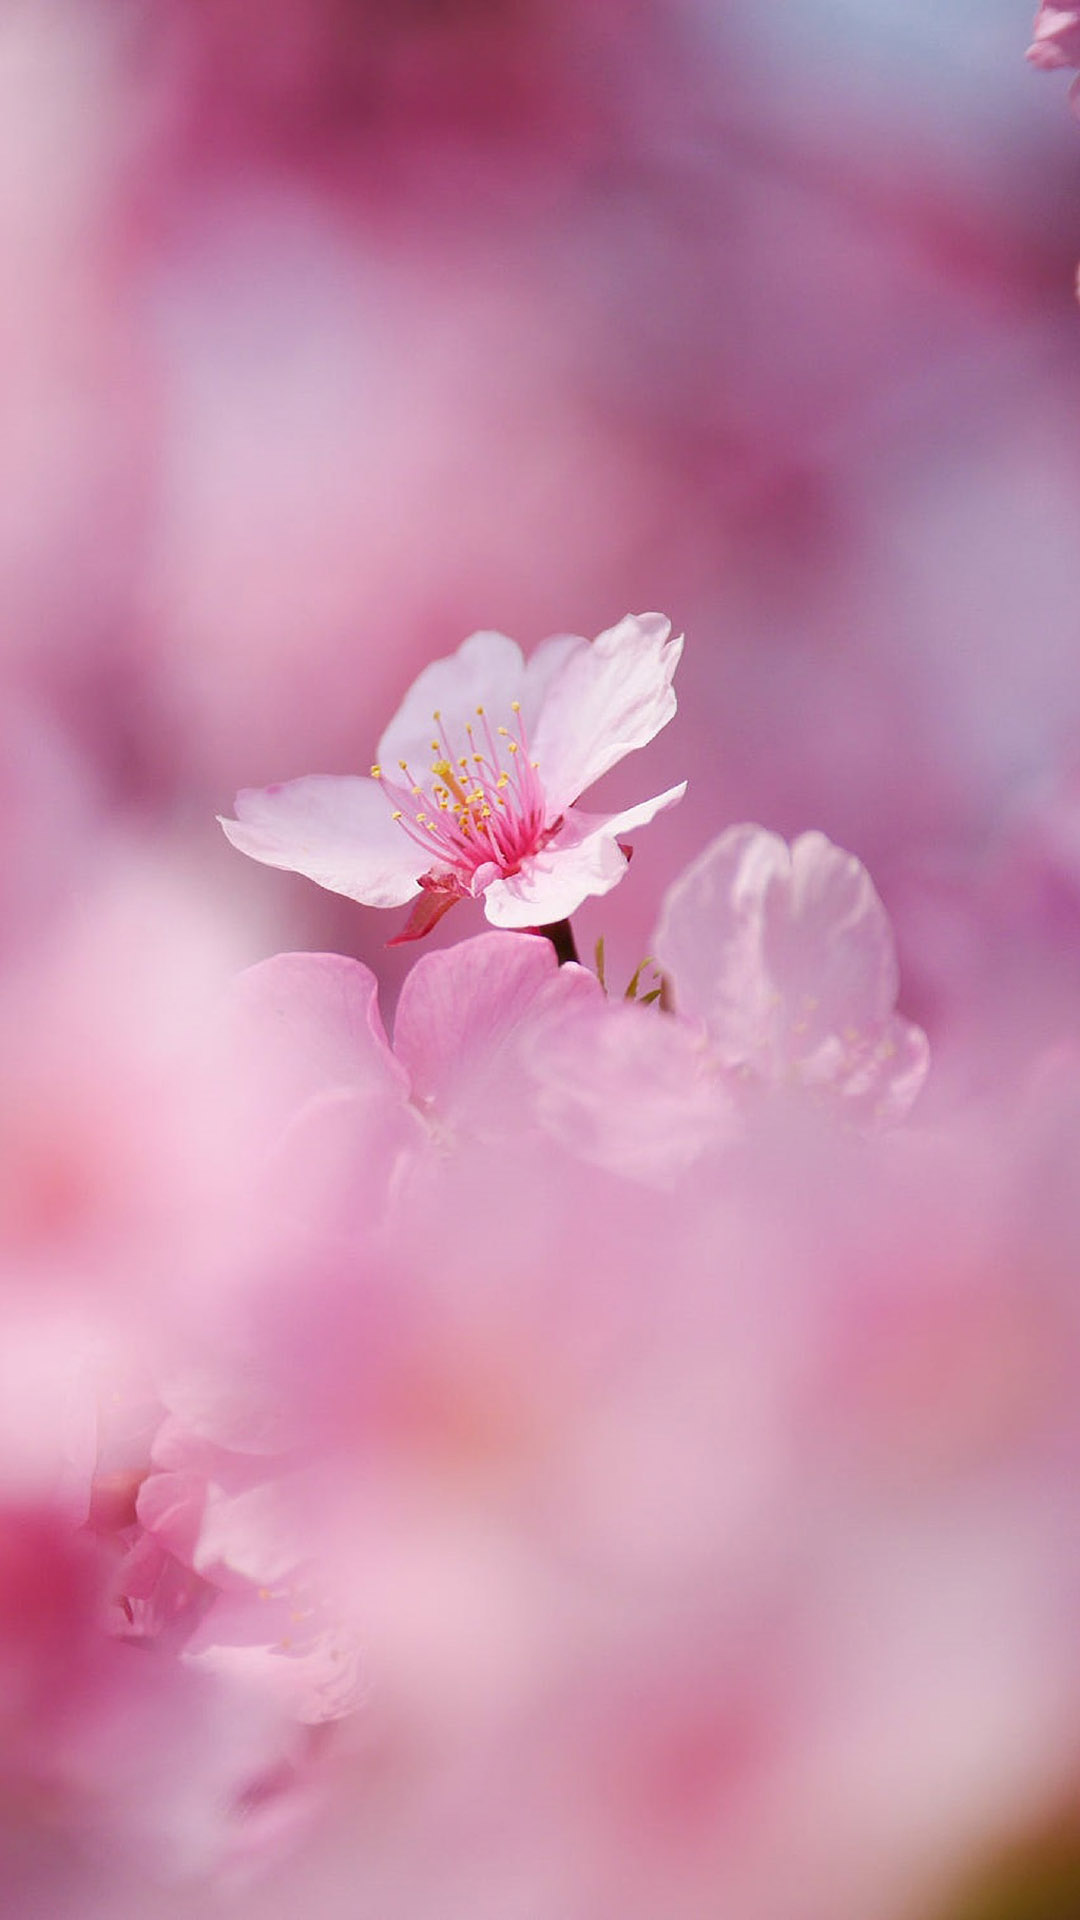 粉色桃花唯美风景摄影图片手机壁纸,绿色壁纸保护视力唯美